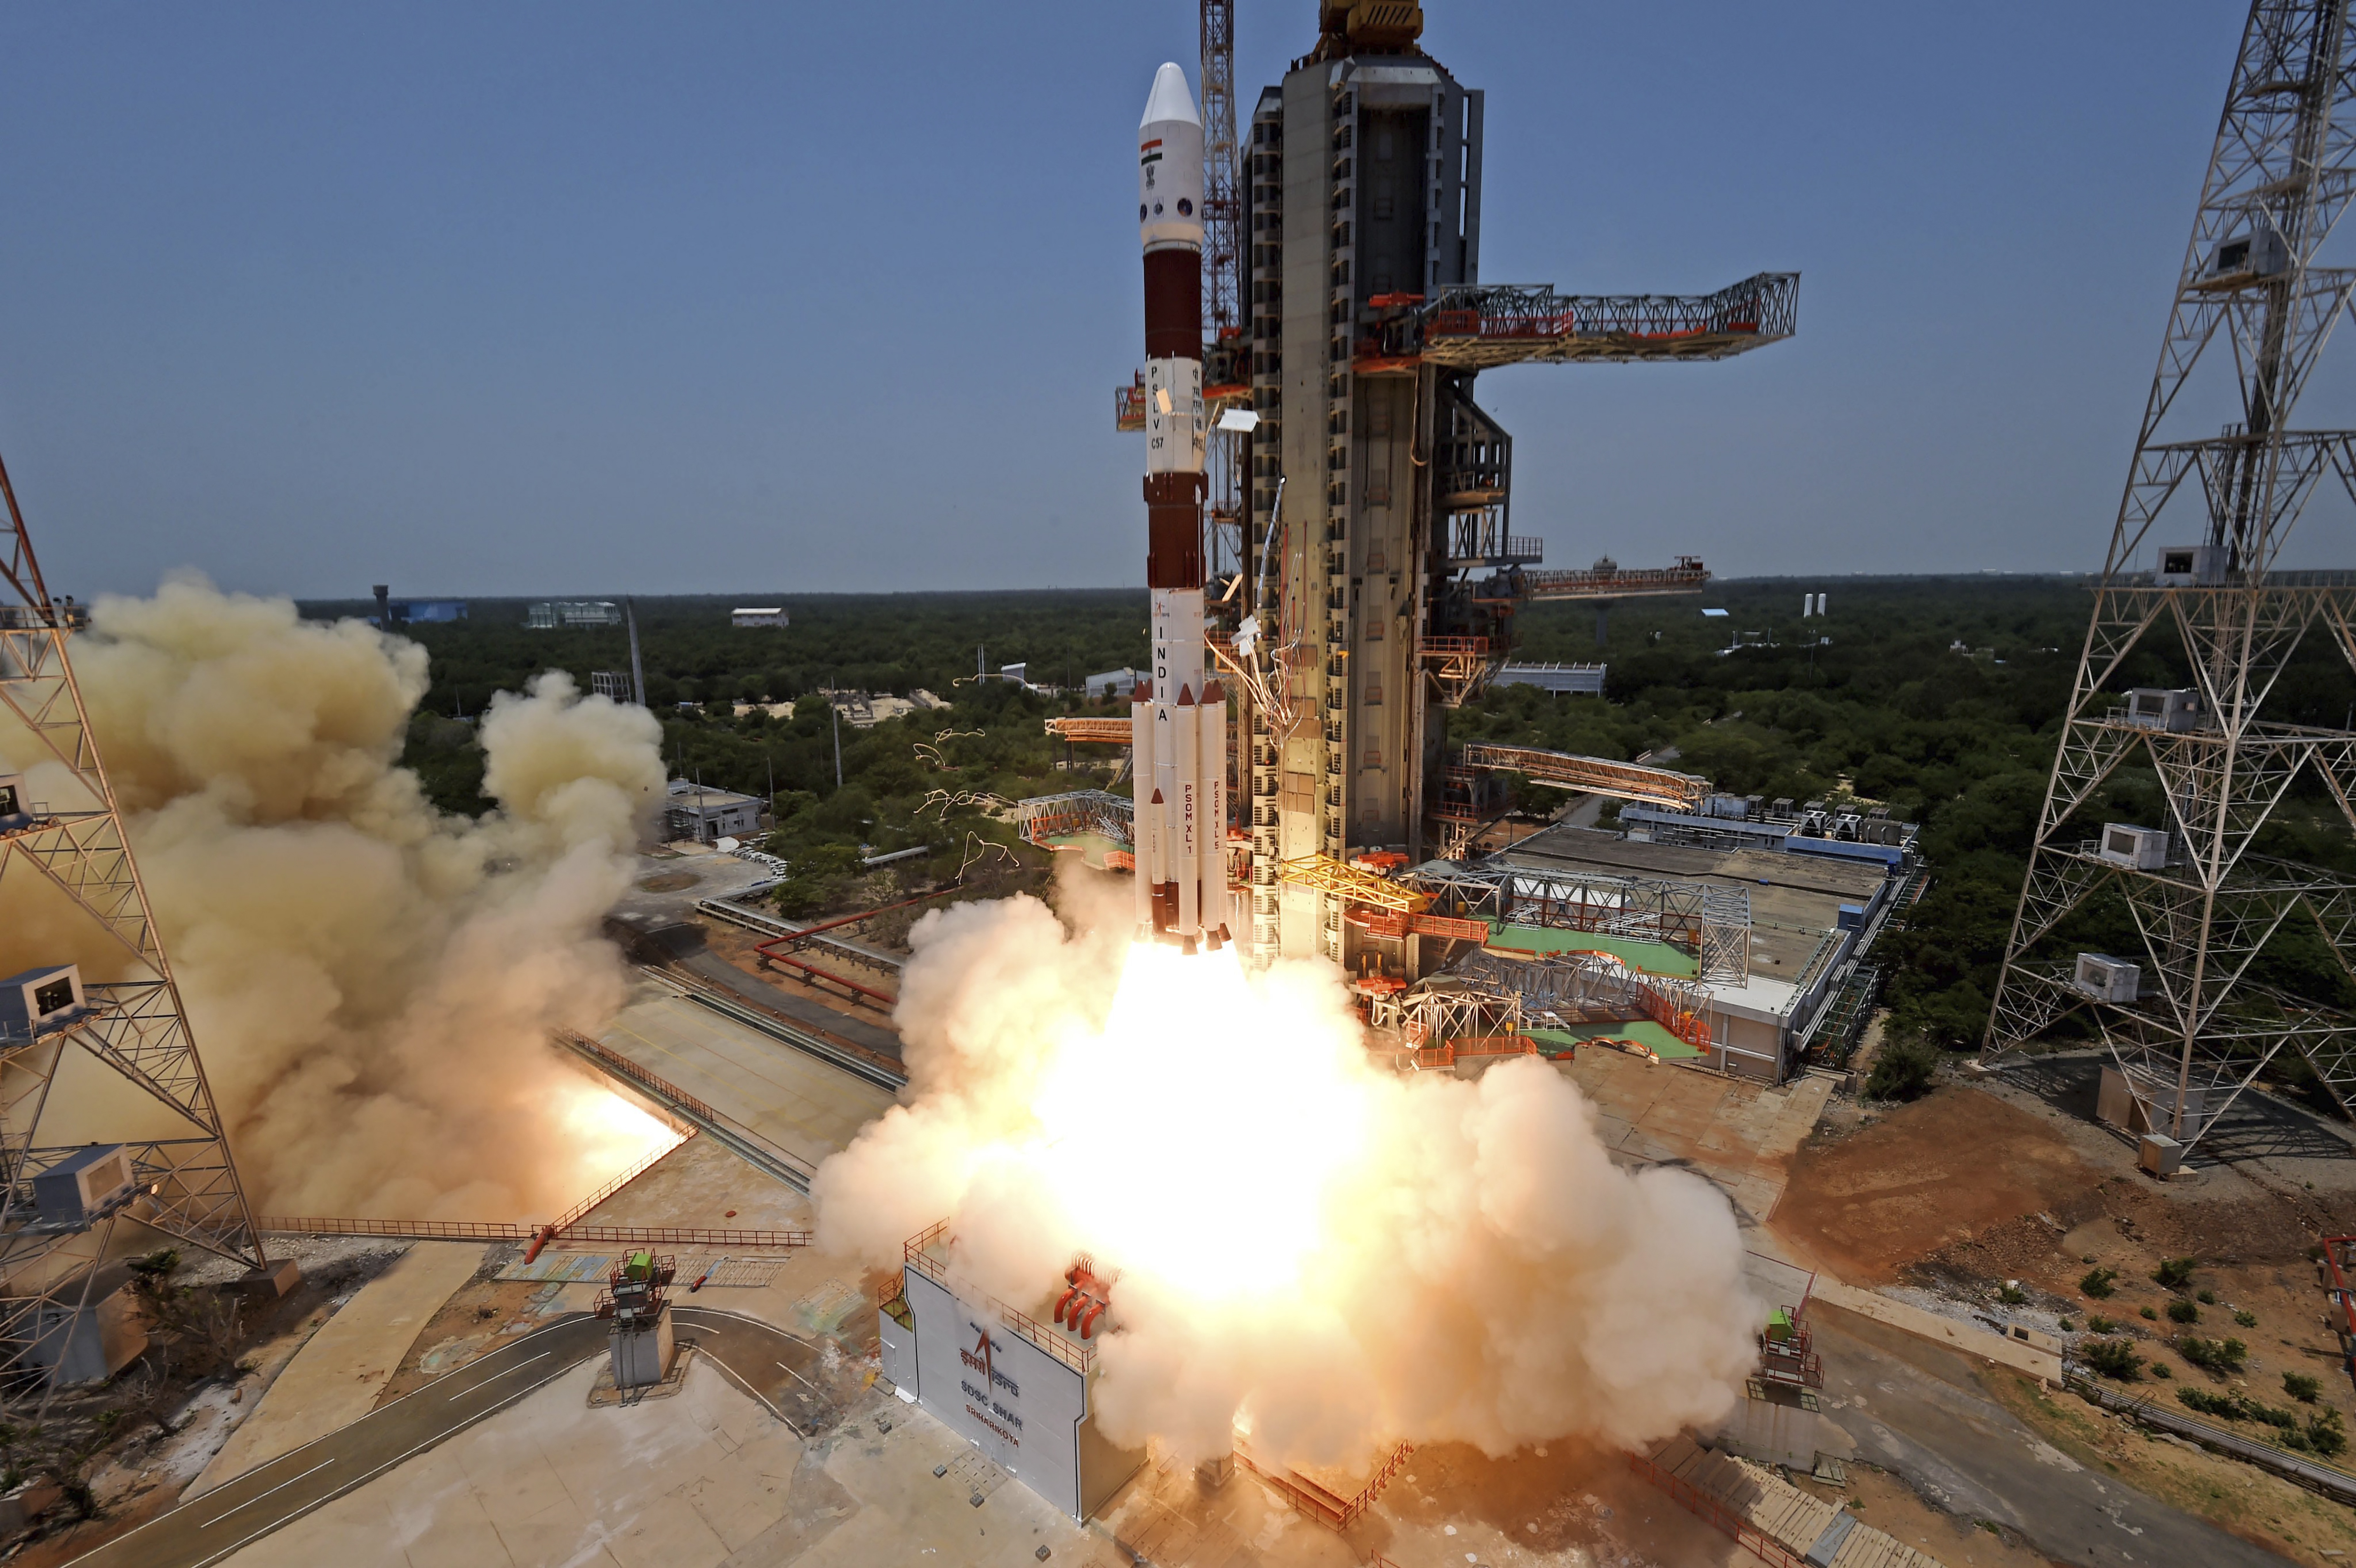 Een Indiaas ruimtevaartuig dat de zon moet observeren, heeft na een maandenlange vlucht door de ruimte zijn bestemming bereikt. Premier Narendra Modi van India presenteerde dat op sociale media als een nieuwe mijlpaal voor het ruimtevaartprogramma van zijn land.